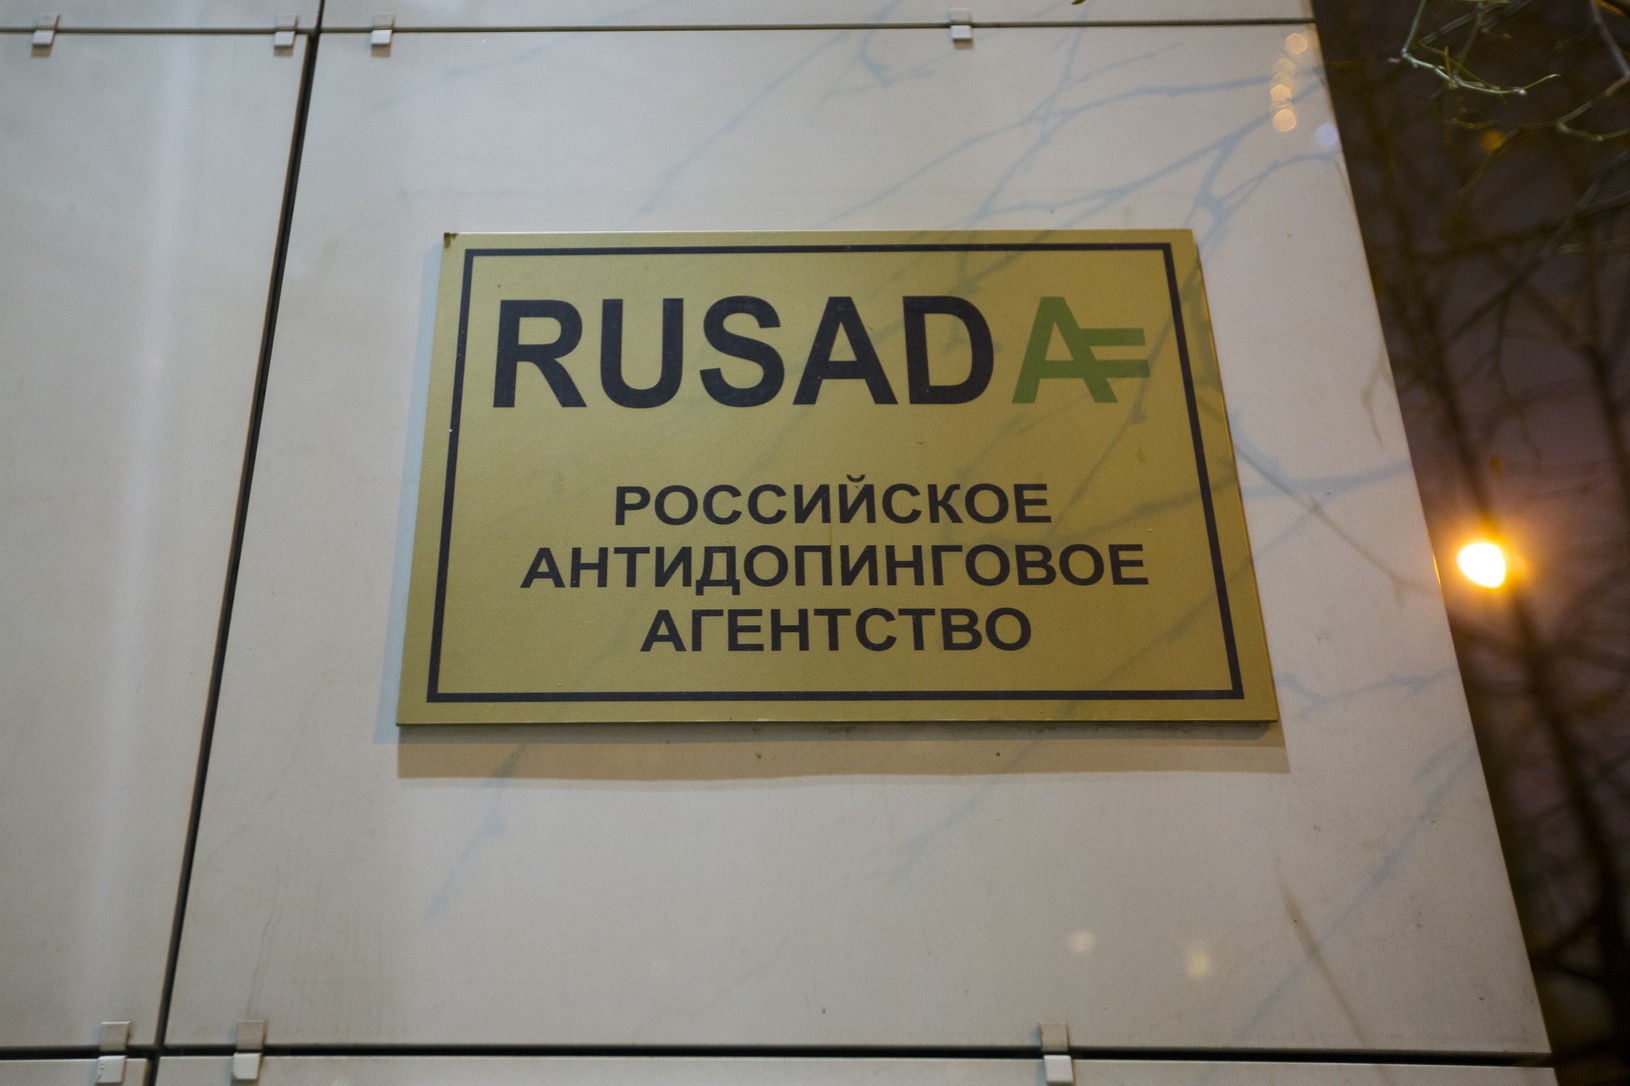 RUSADA - logo Ruskej